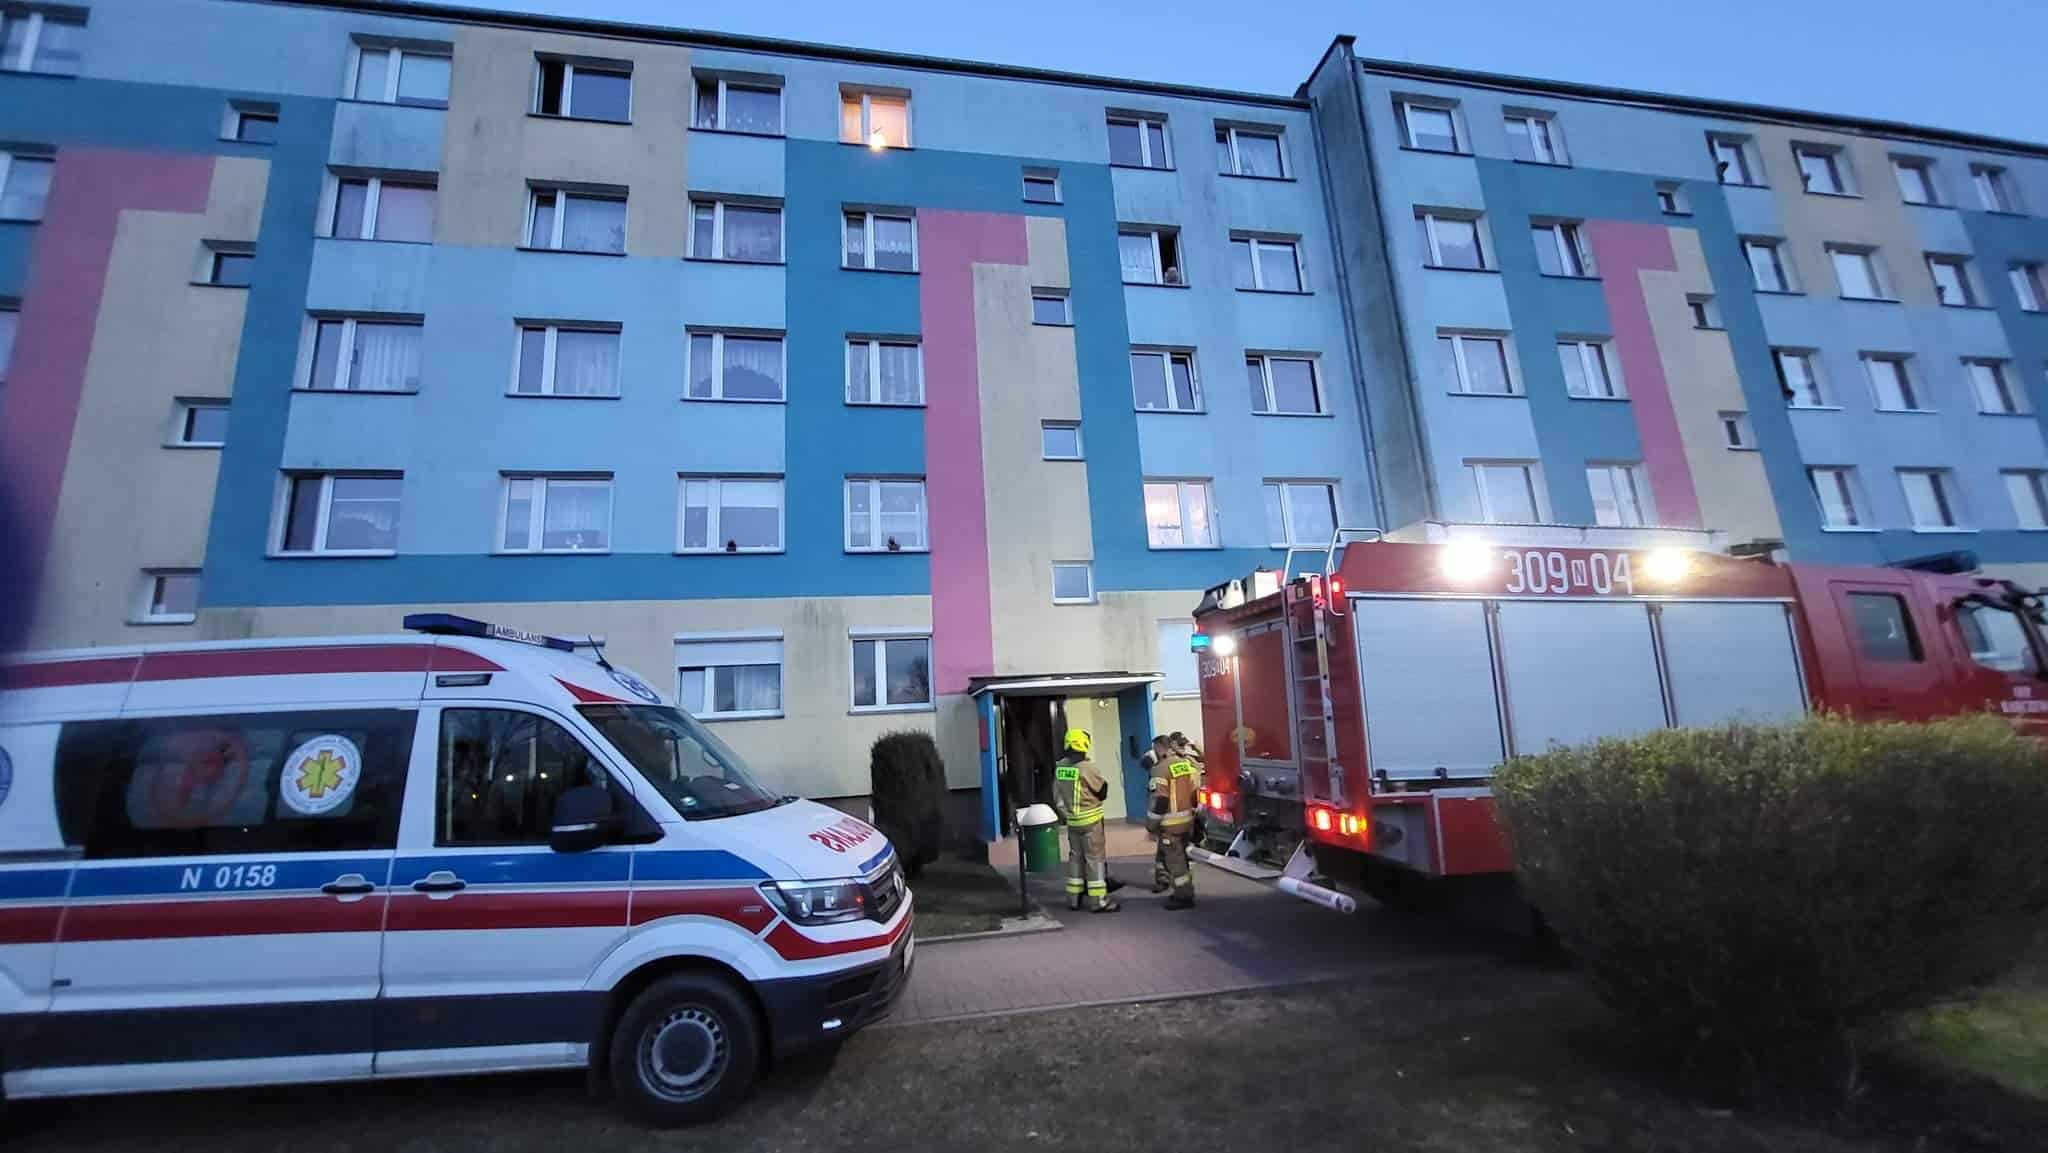 Wybuch w mieszkaniu ranił mężczyznę i uszkodził telewizor Olsztyn, Wiadomości, zemptypost, zPAP